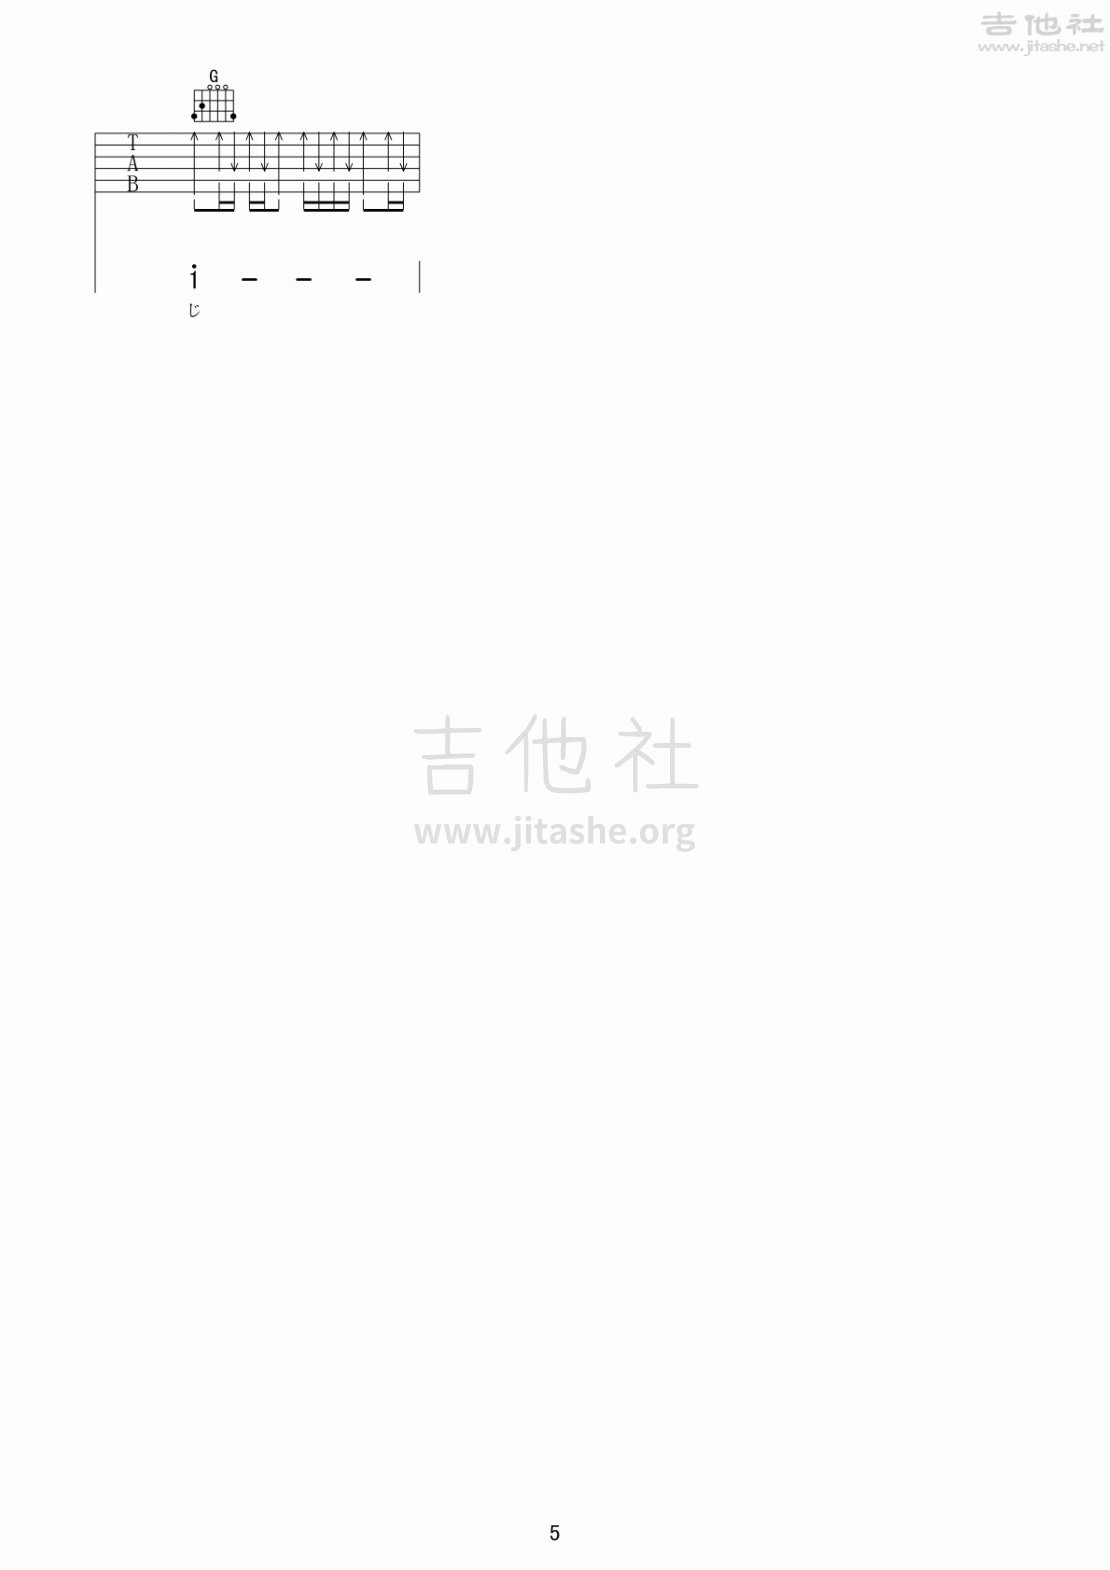 打印:風になりたい吉他谱_群星(Various Artists)_風になりたい05.gif